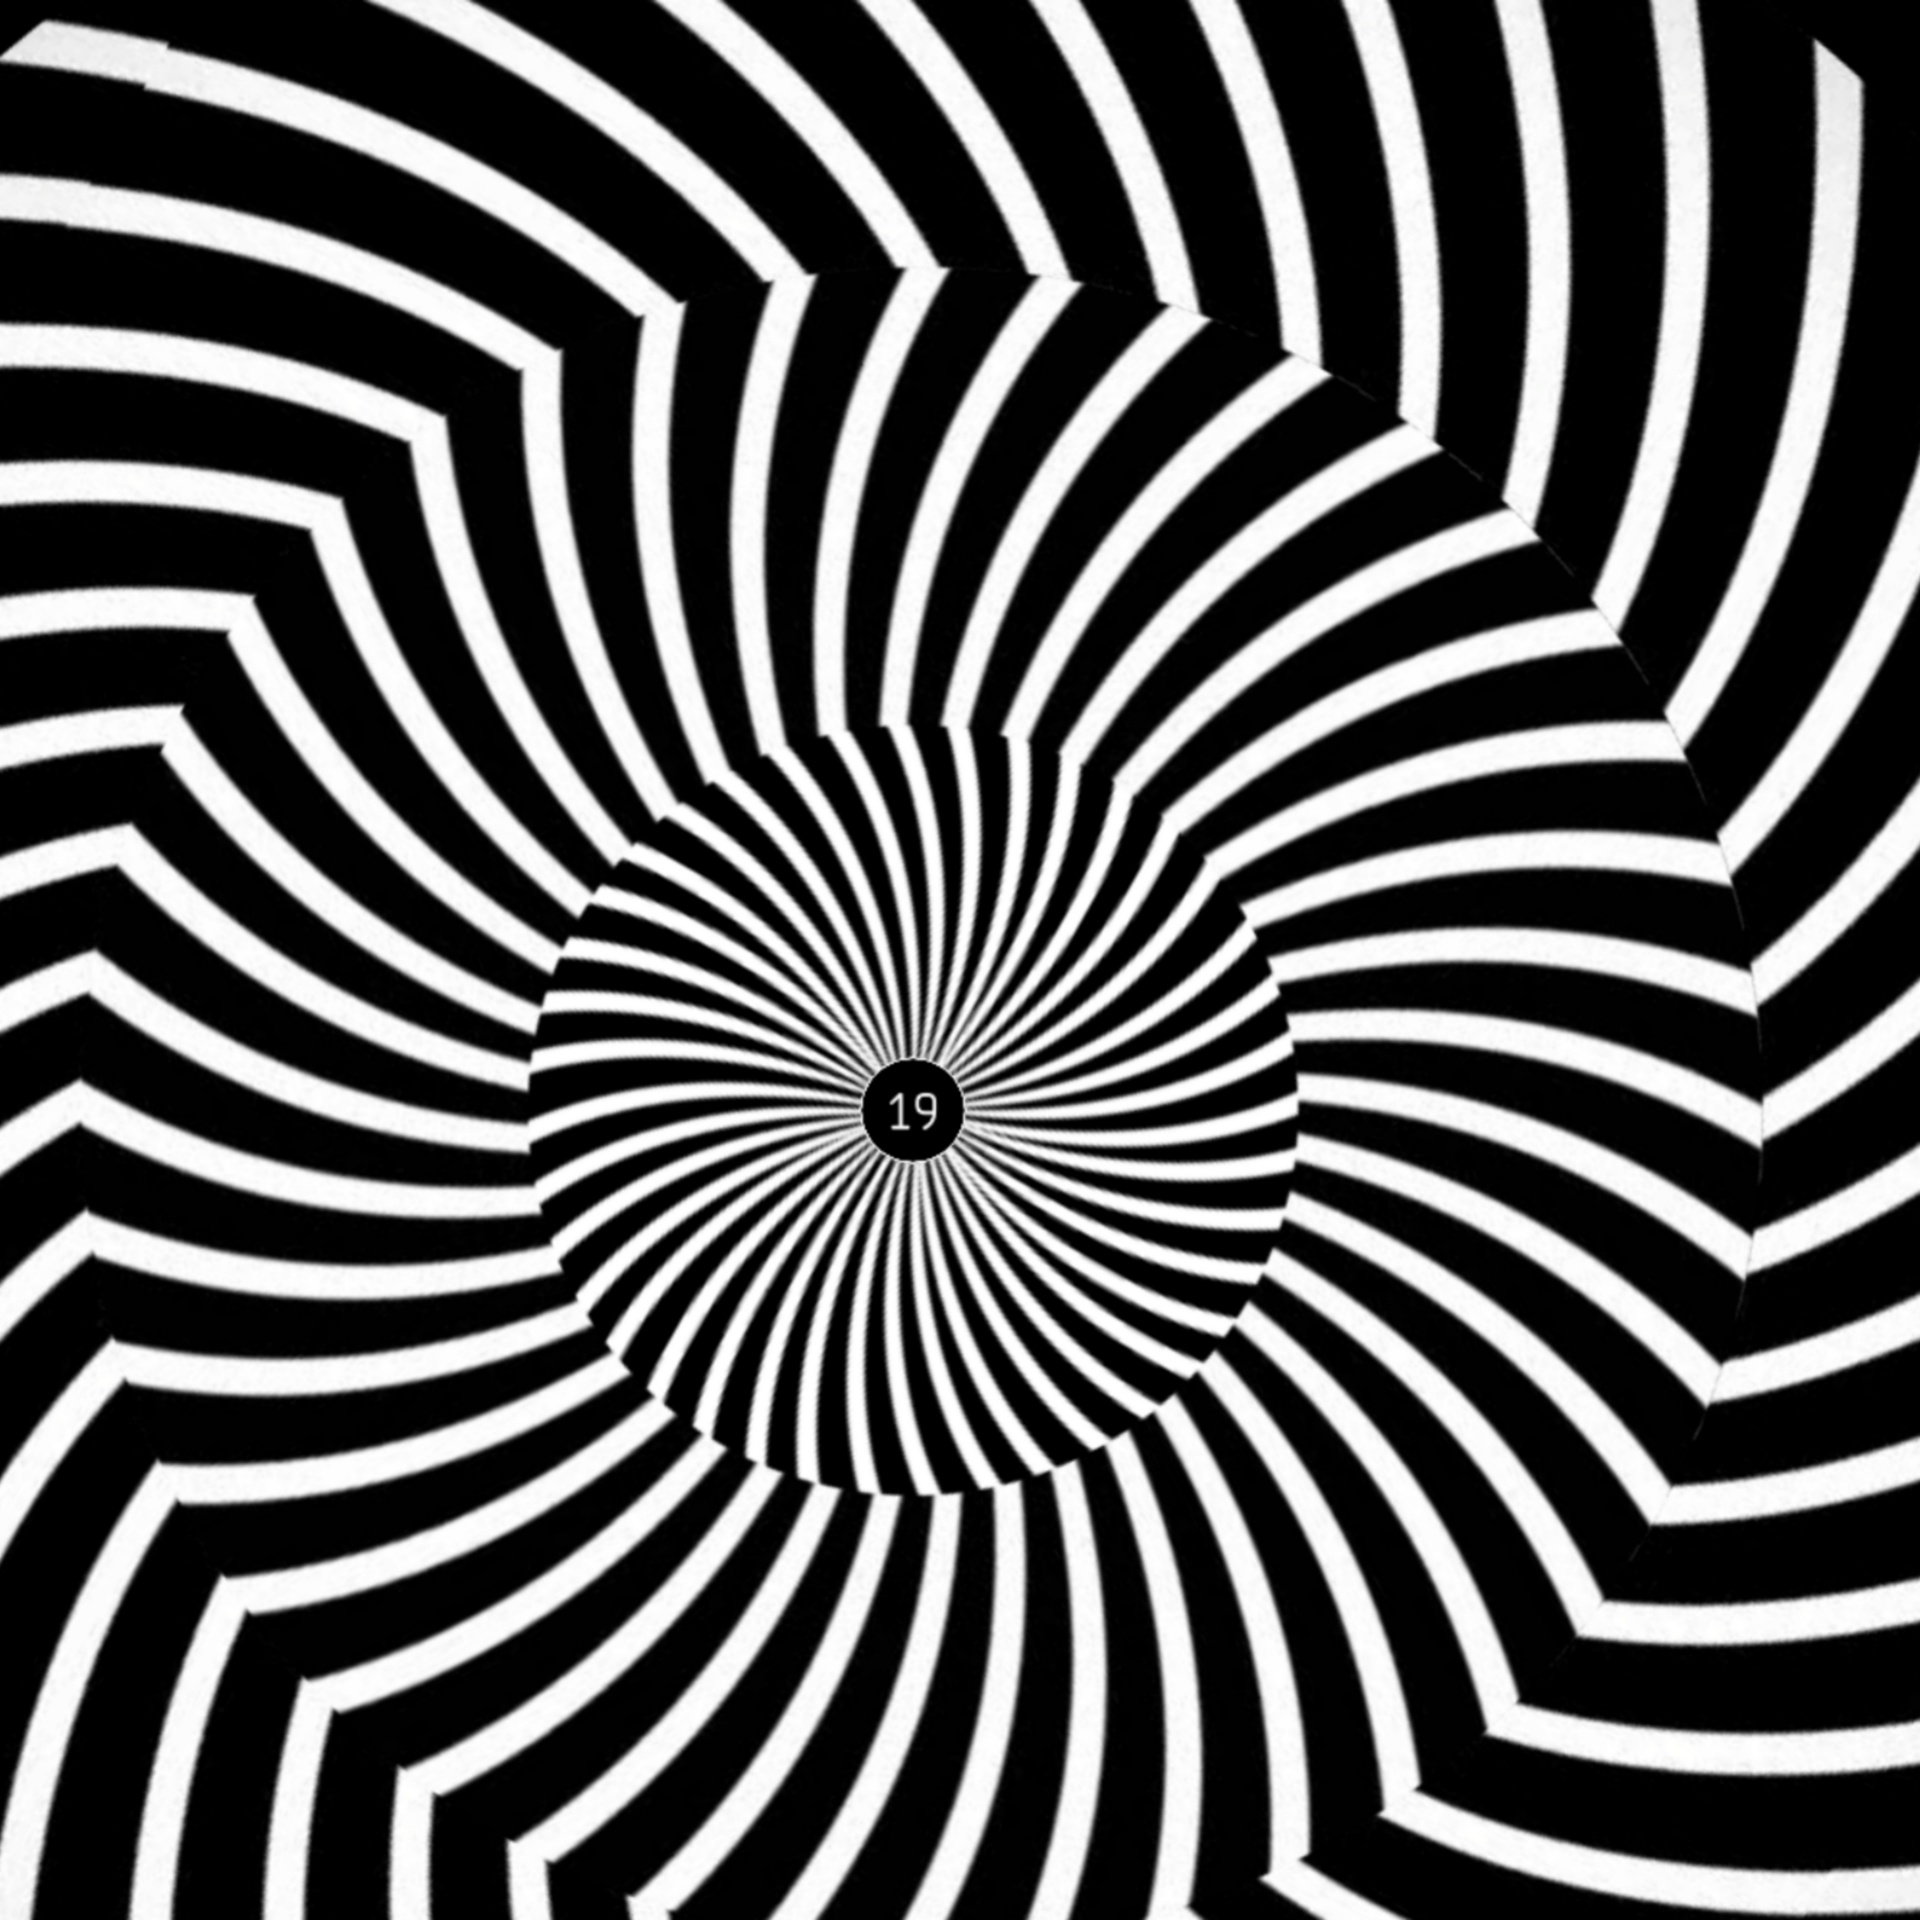 Group-Nos yeux sont magiques illusions d optique 1 optical-illusion-15081127124xn.jpg